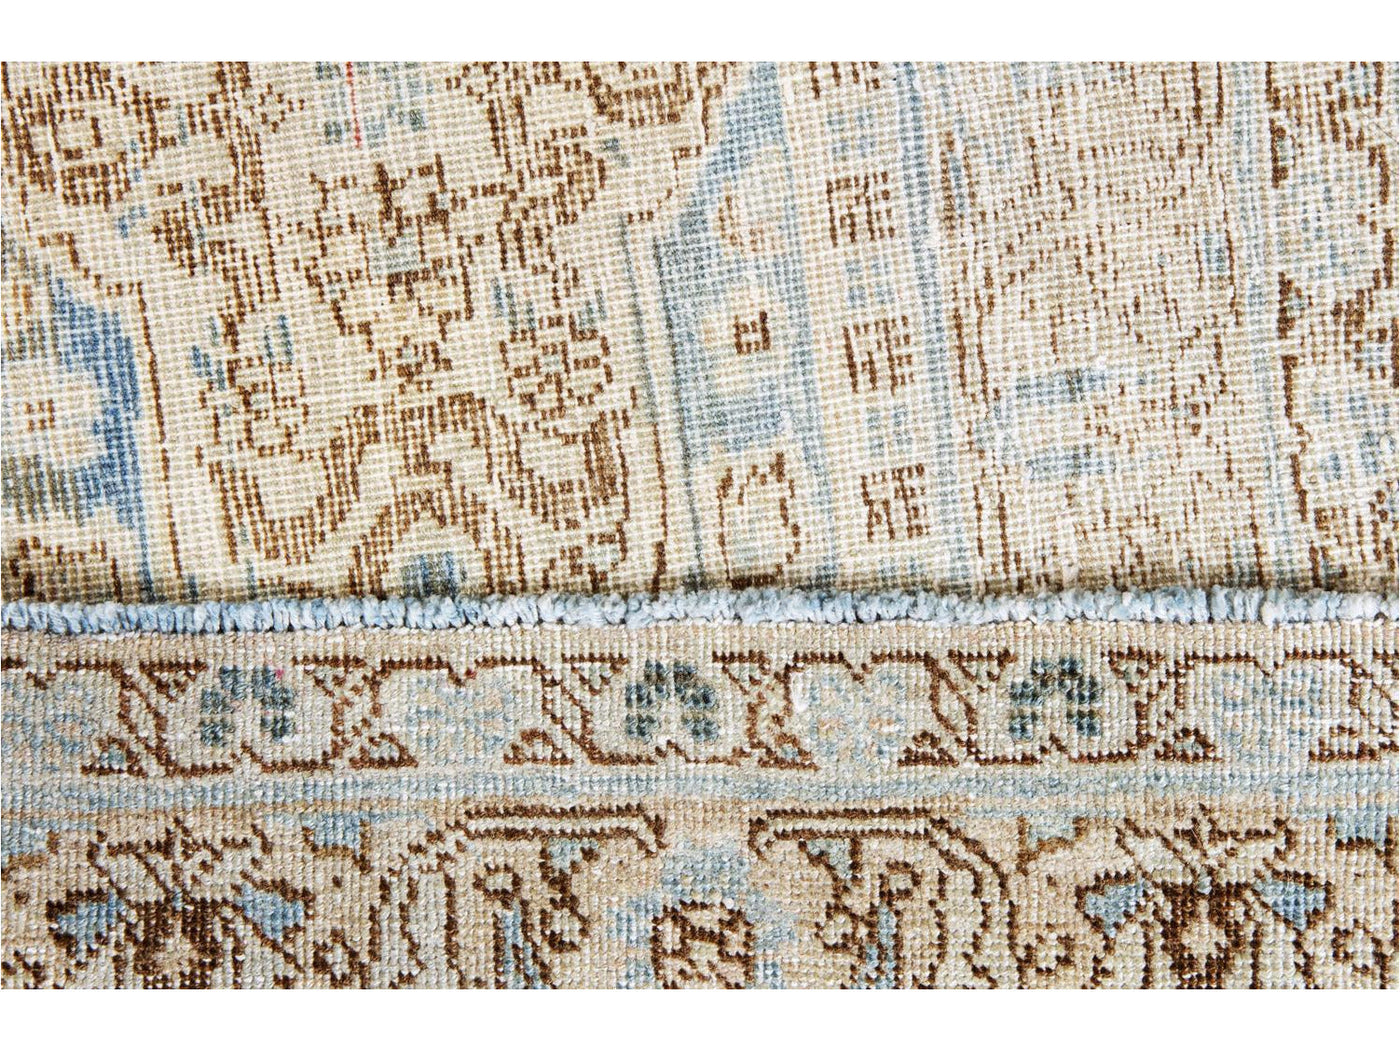 Antique Tabriz Wool Rug 9 X 11